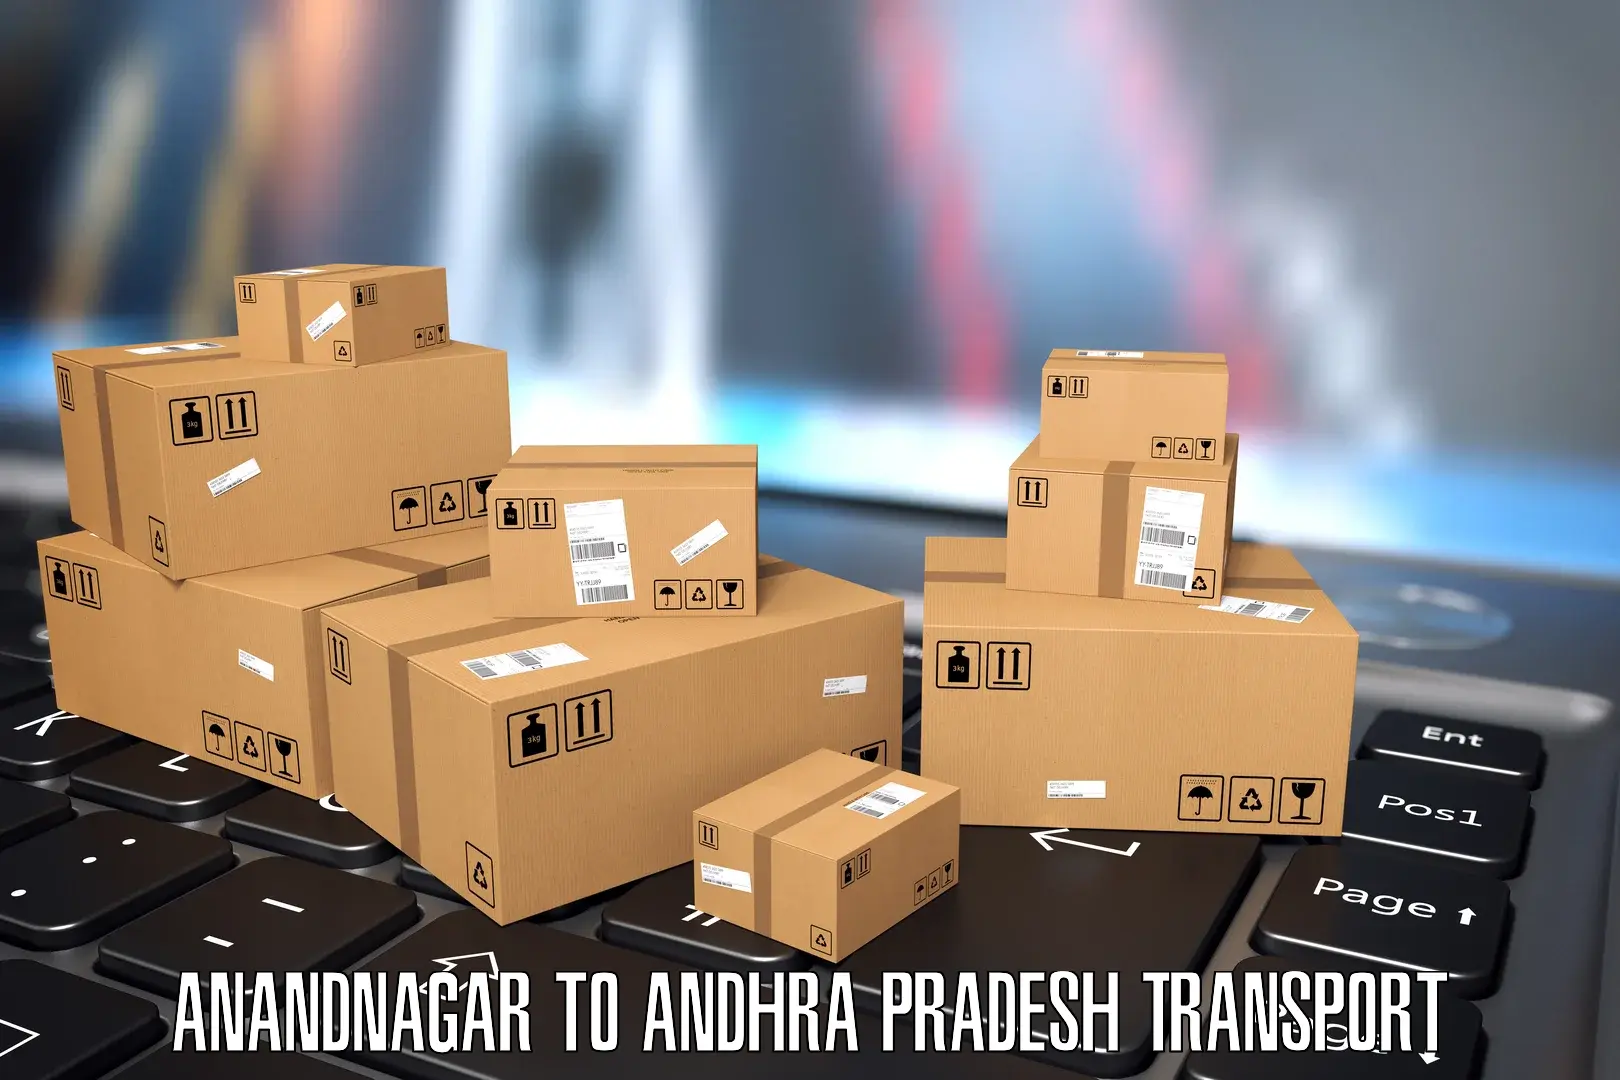 Nearest transport service Anandnagar to Challapalli